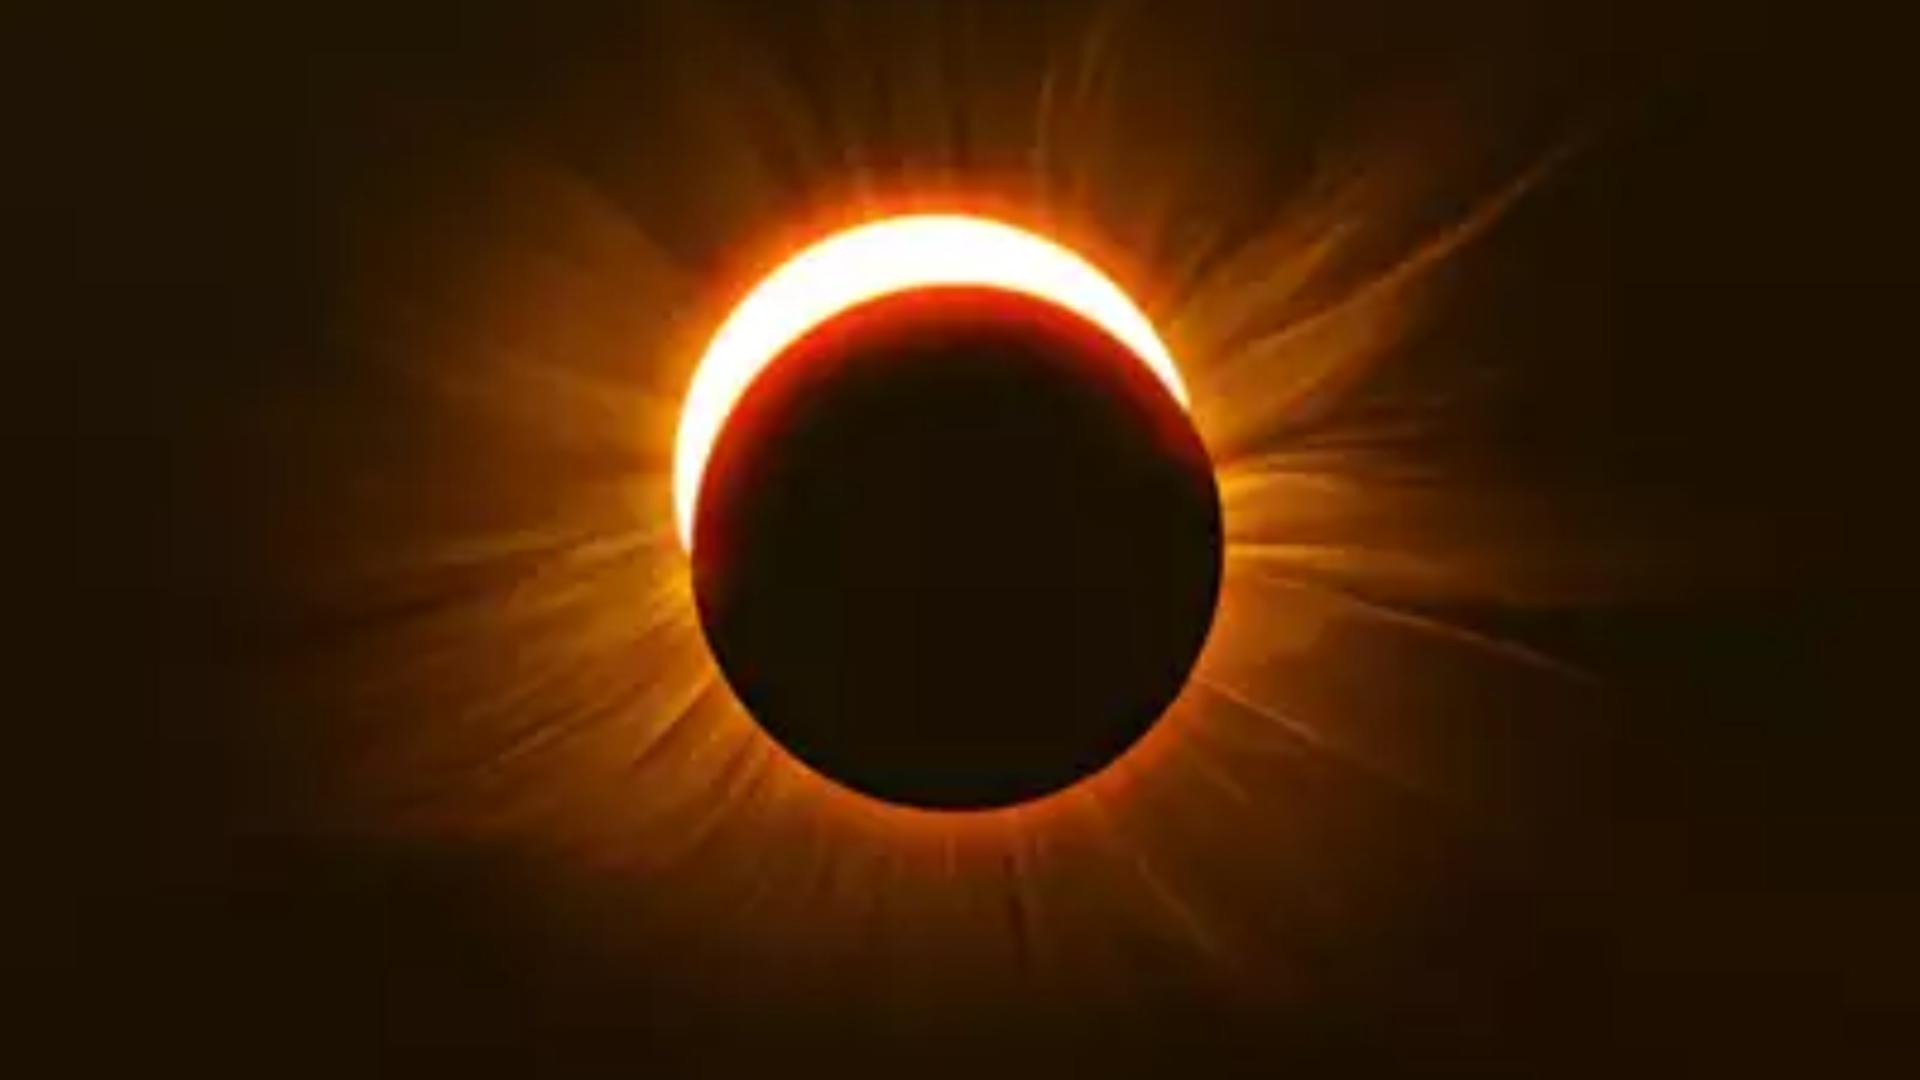 Rar eveniment astronomic: Eclipsă TOTALĂ de Soare. 4 decembrie - Imagini spectaculoase